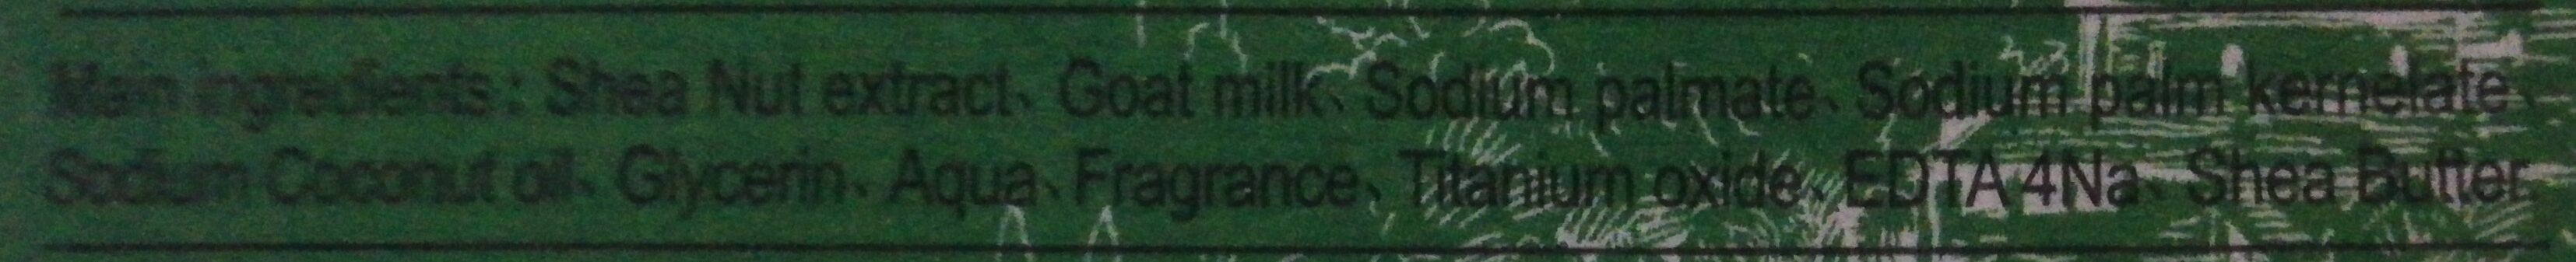 Soap - Ingredients - en